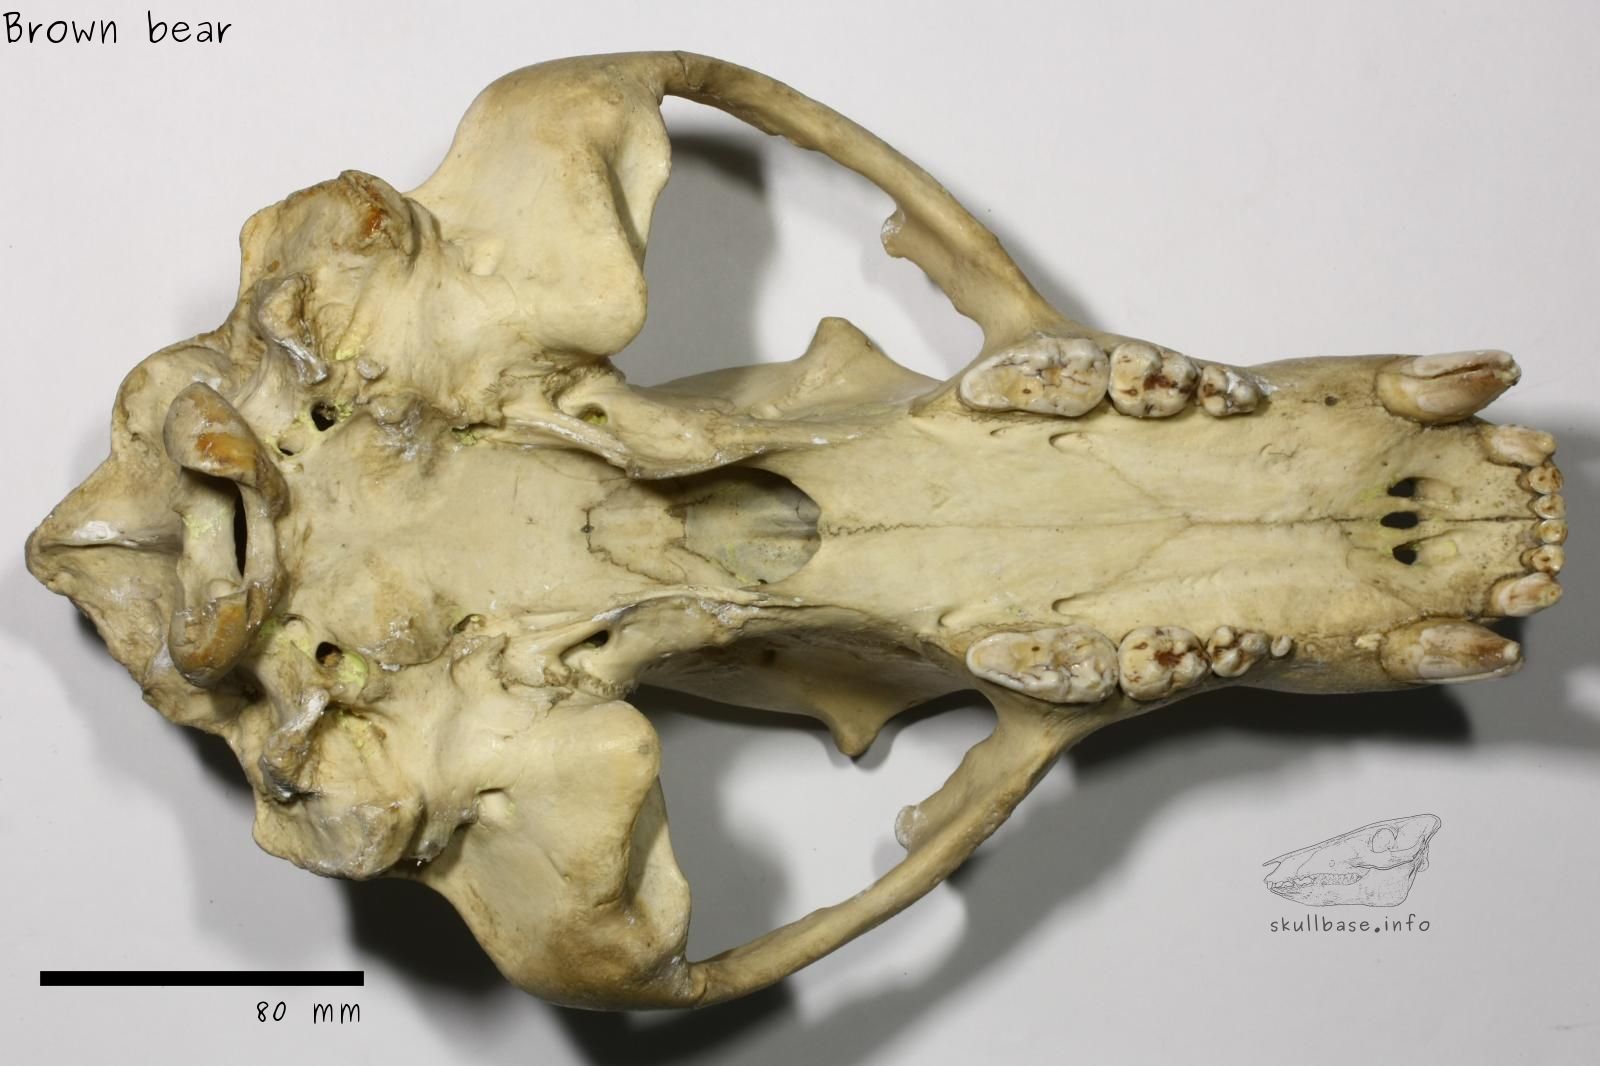 Brown bear (Ursus arctos) skull ventral view